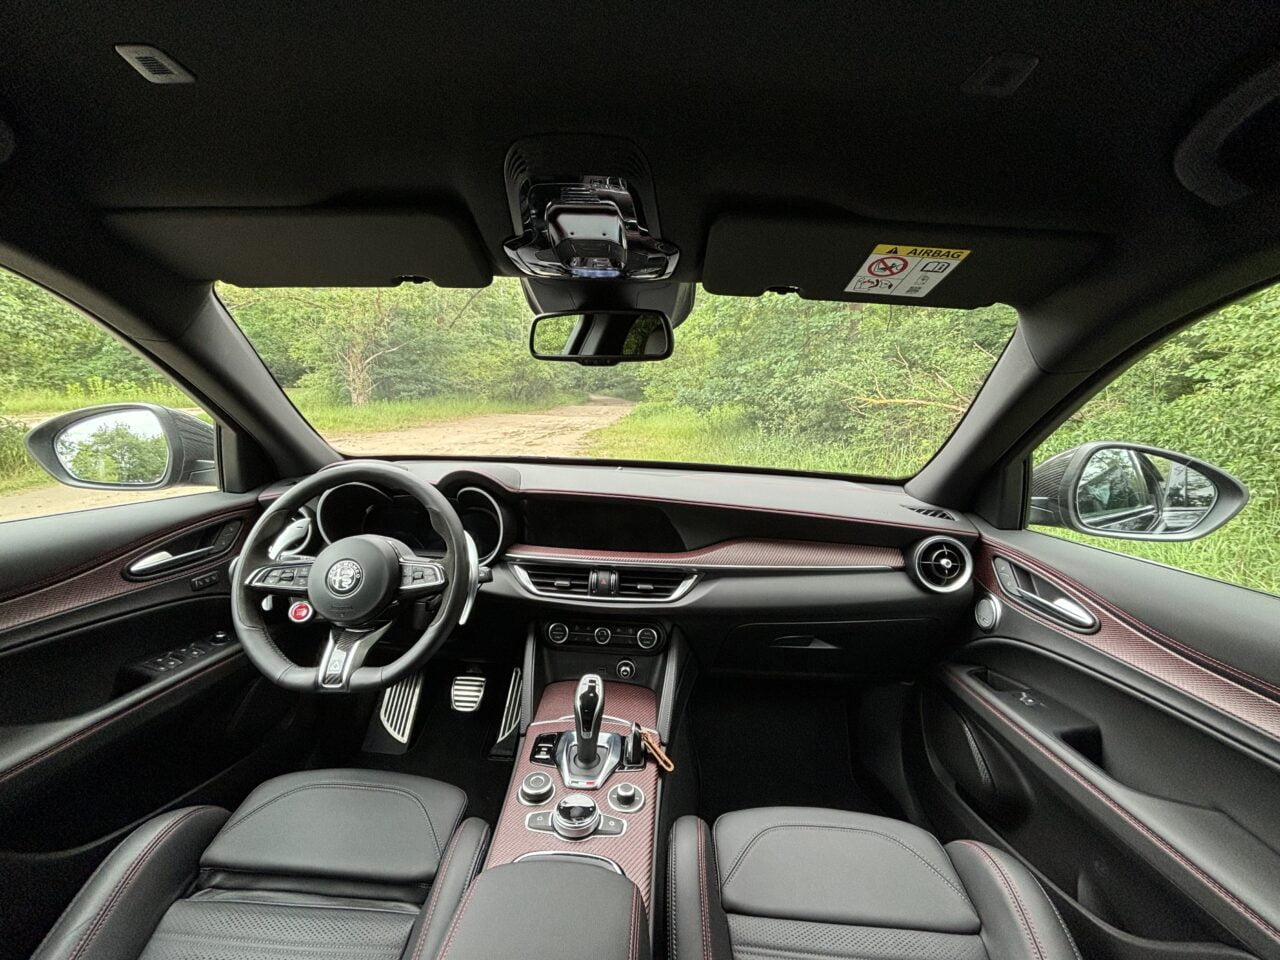 Wnętrze samochodu marki Alfa Romeo z widokiem na kierownicę, konsolę środkową i deskę rozdzielczą, na tle widoczna ścieżka w lesie.